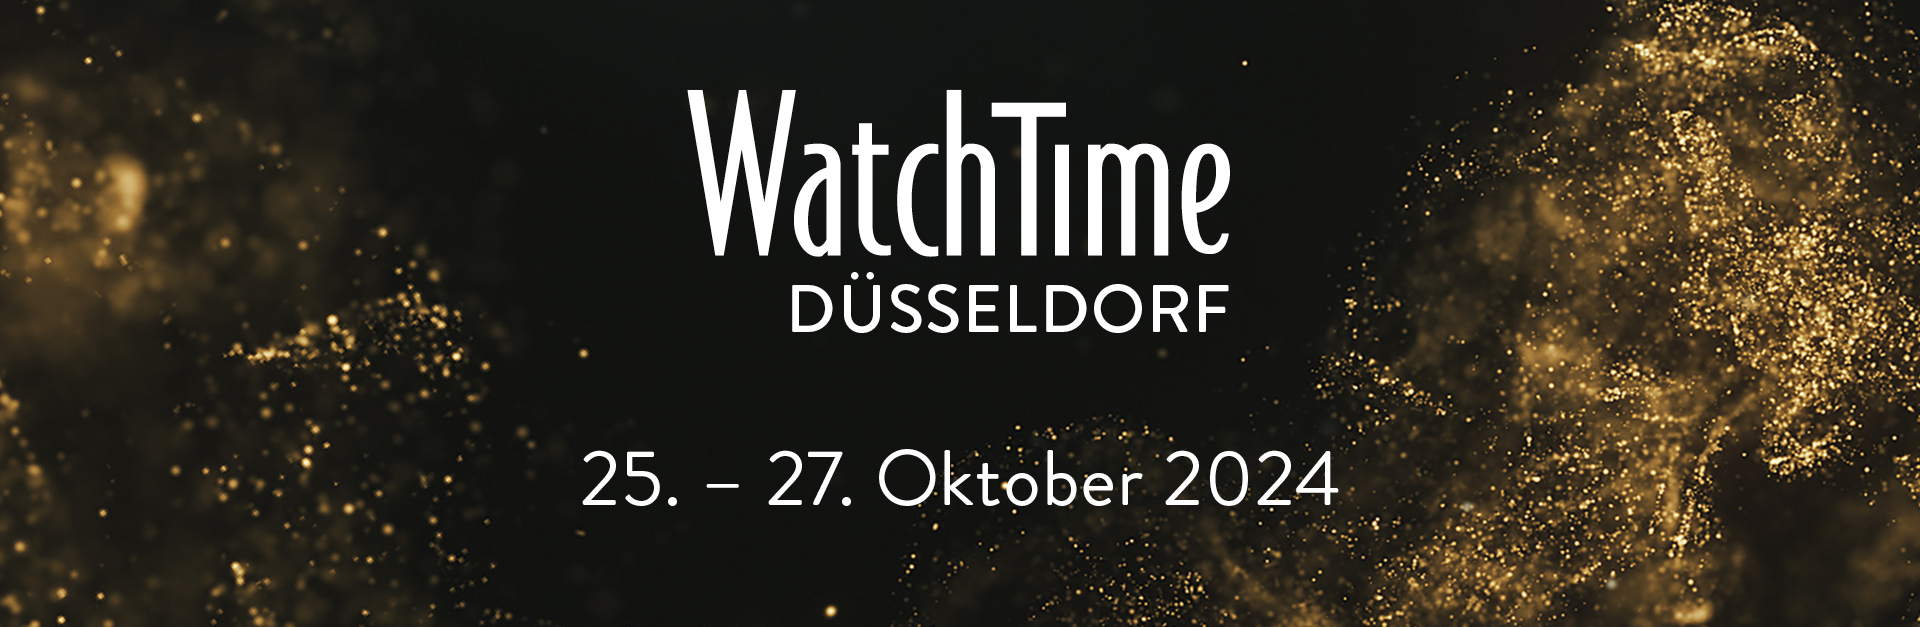 WatchTime Düsseldorf - 25. bis 27. Oktober 2024